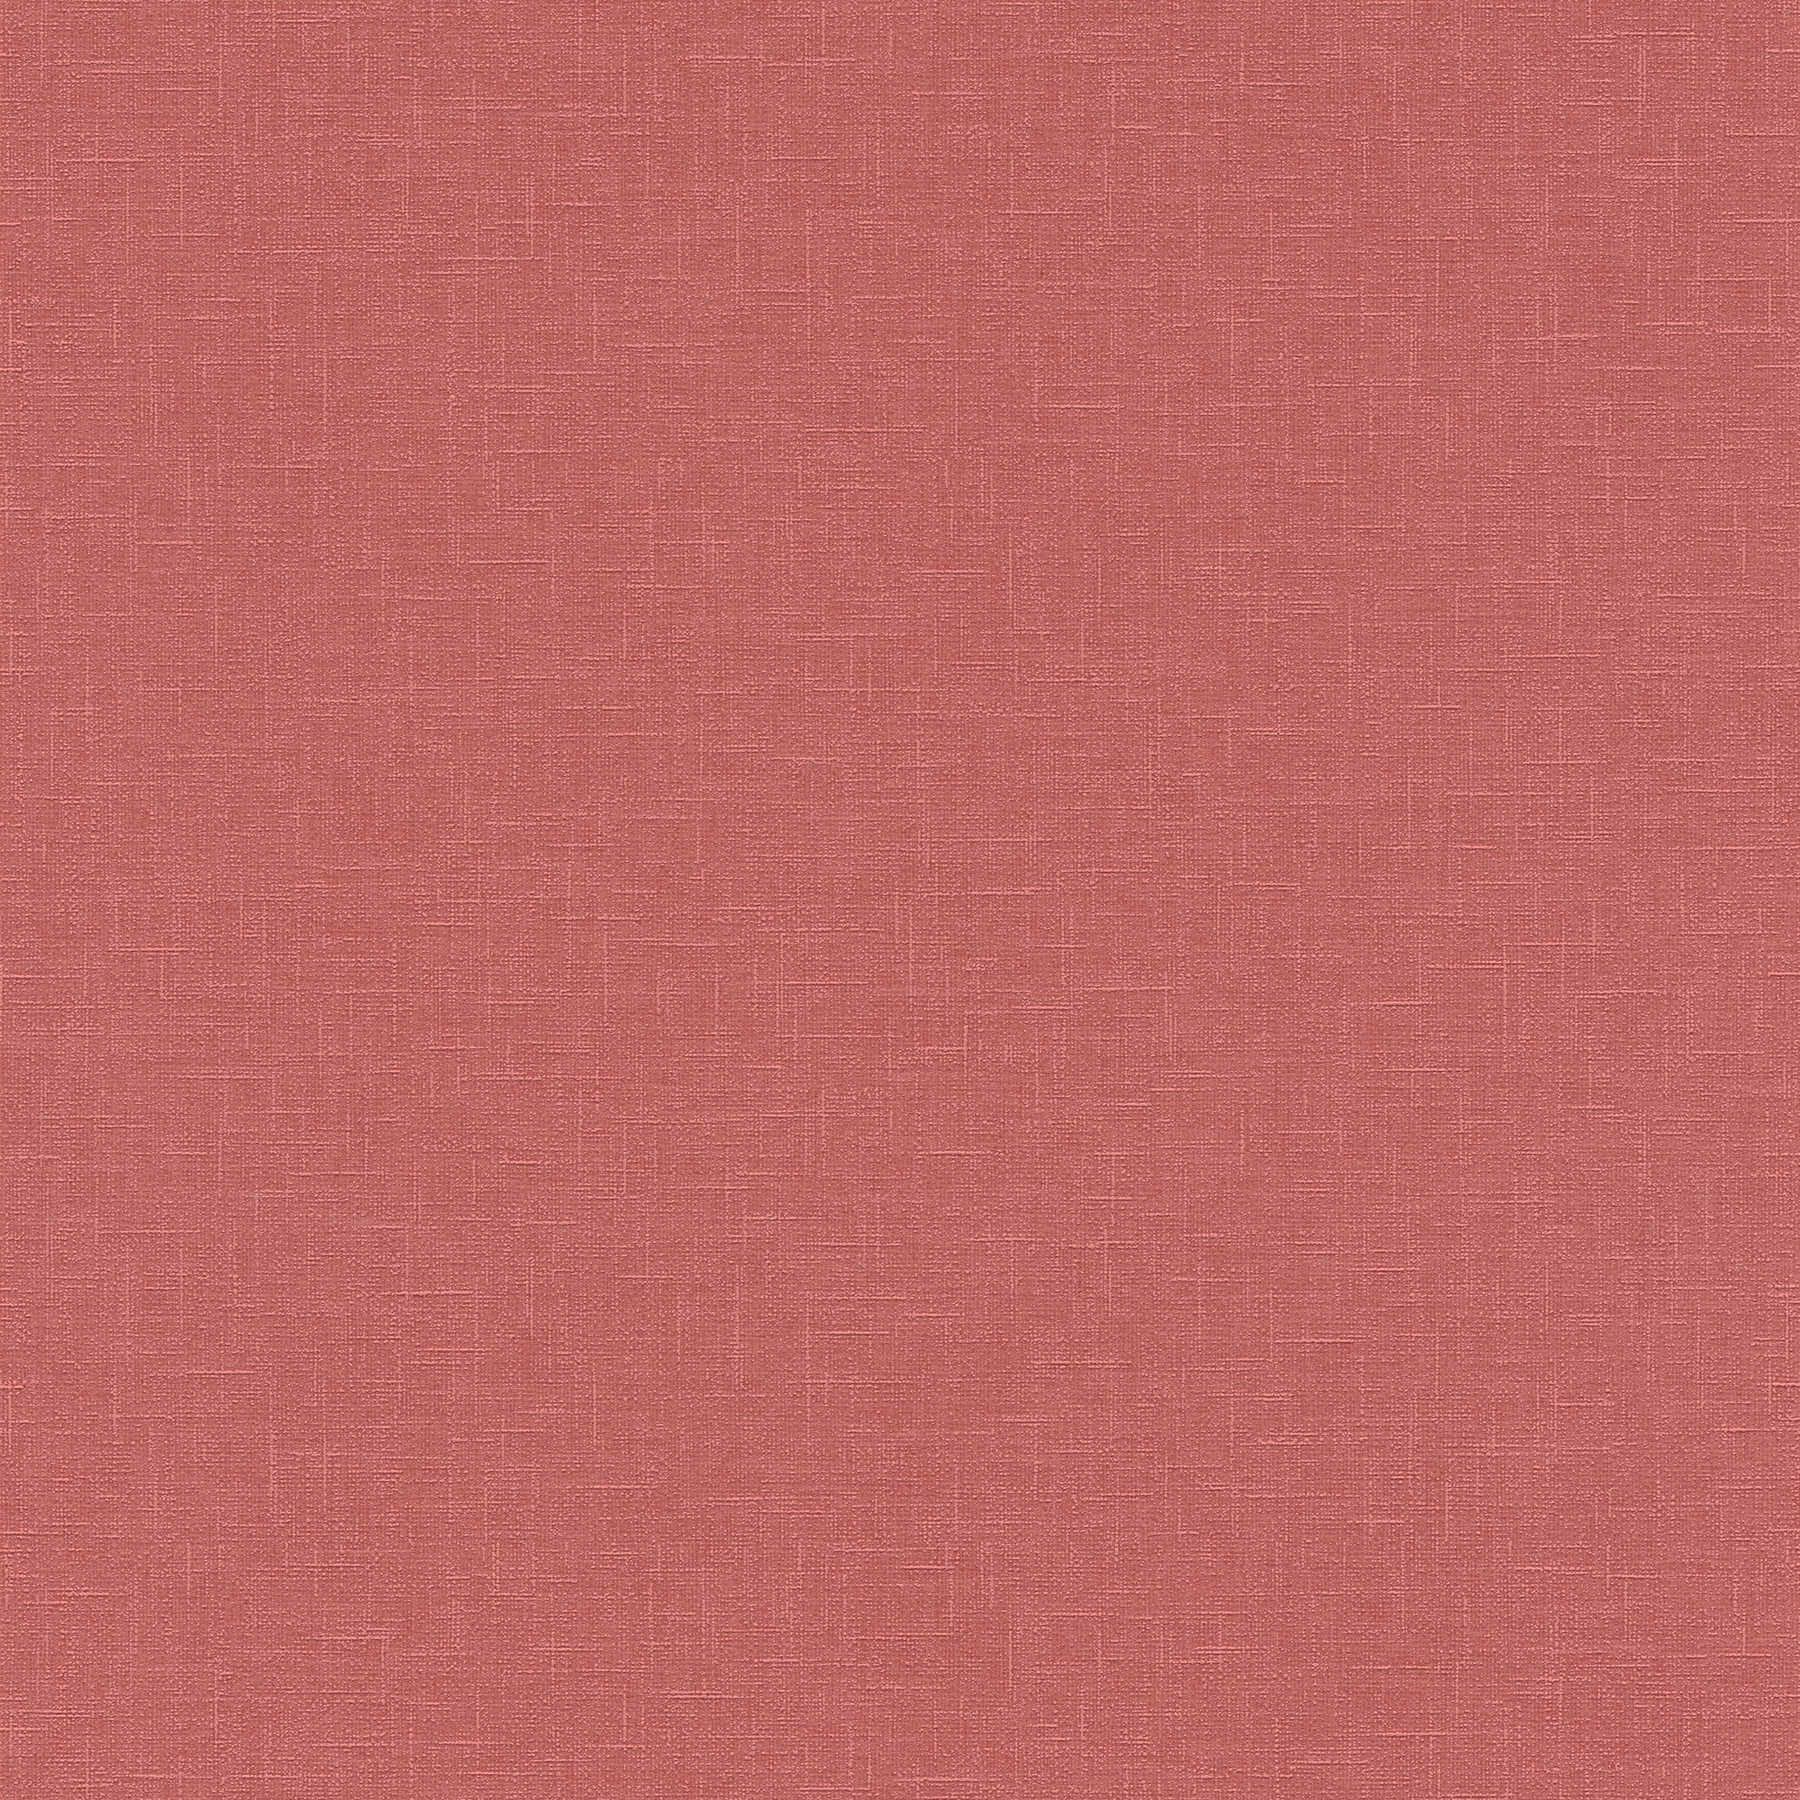 Carta da parati a tinta unita rosa antico con struttura tessile in stile country
